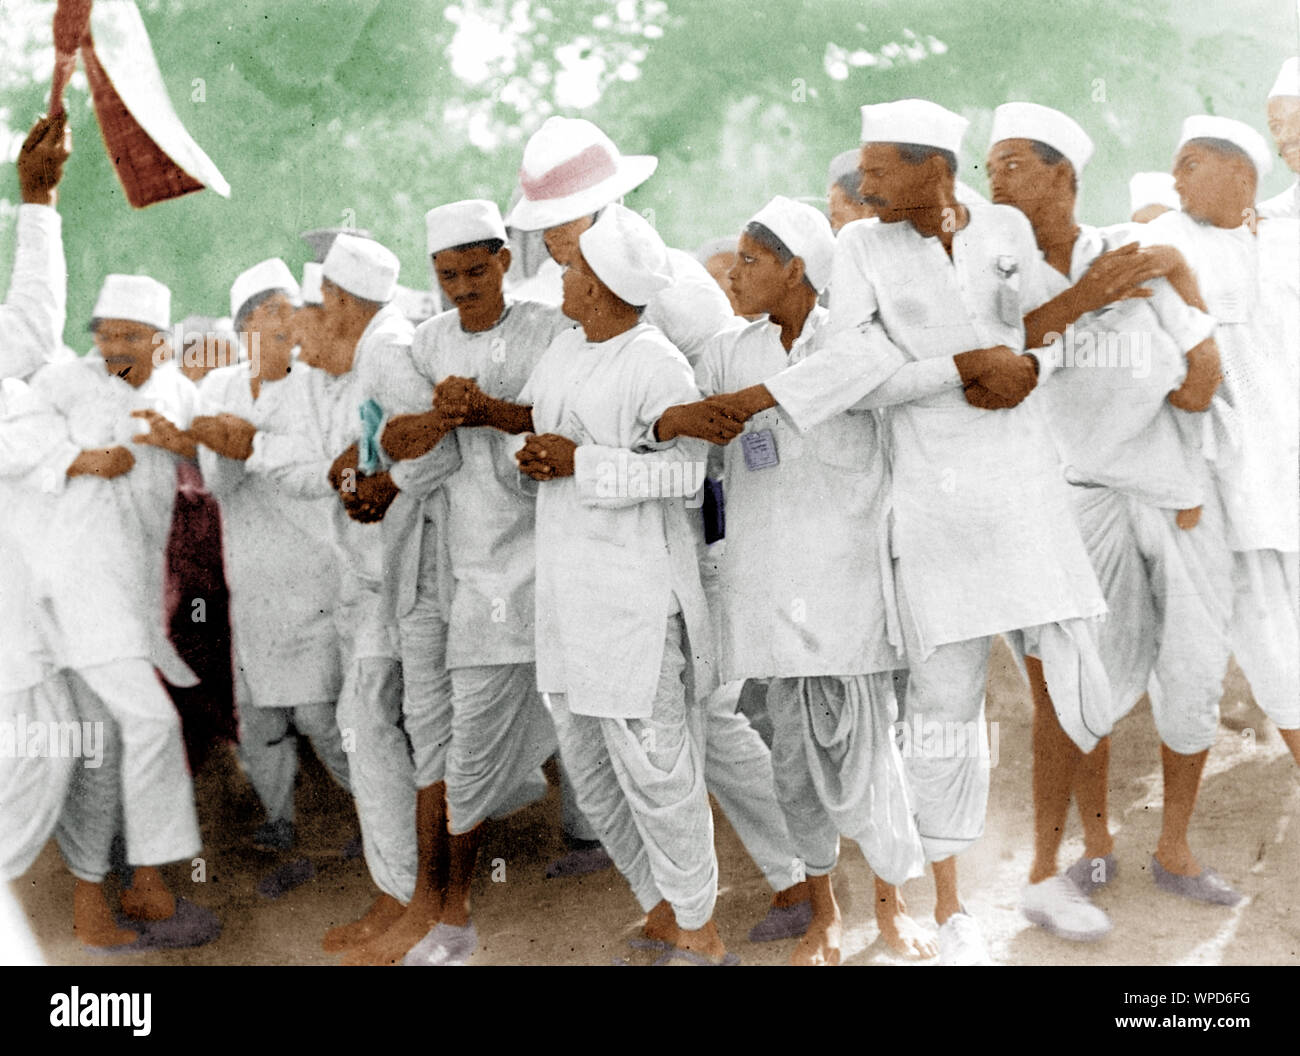 Satyagrahis aneinander festhalten, die von der Polizei schikaniert, Salz Satyagrah, Indien, Asien, 1930 Stockfoto